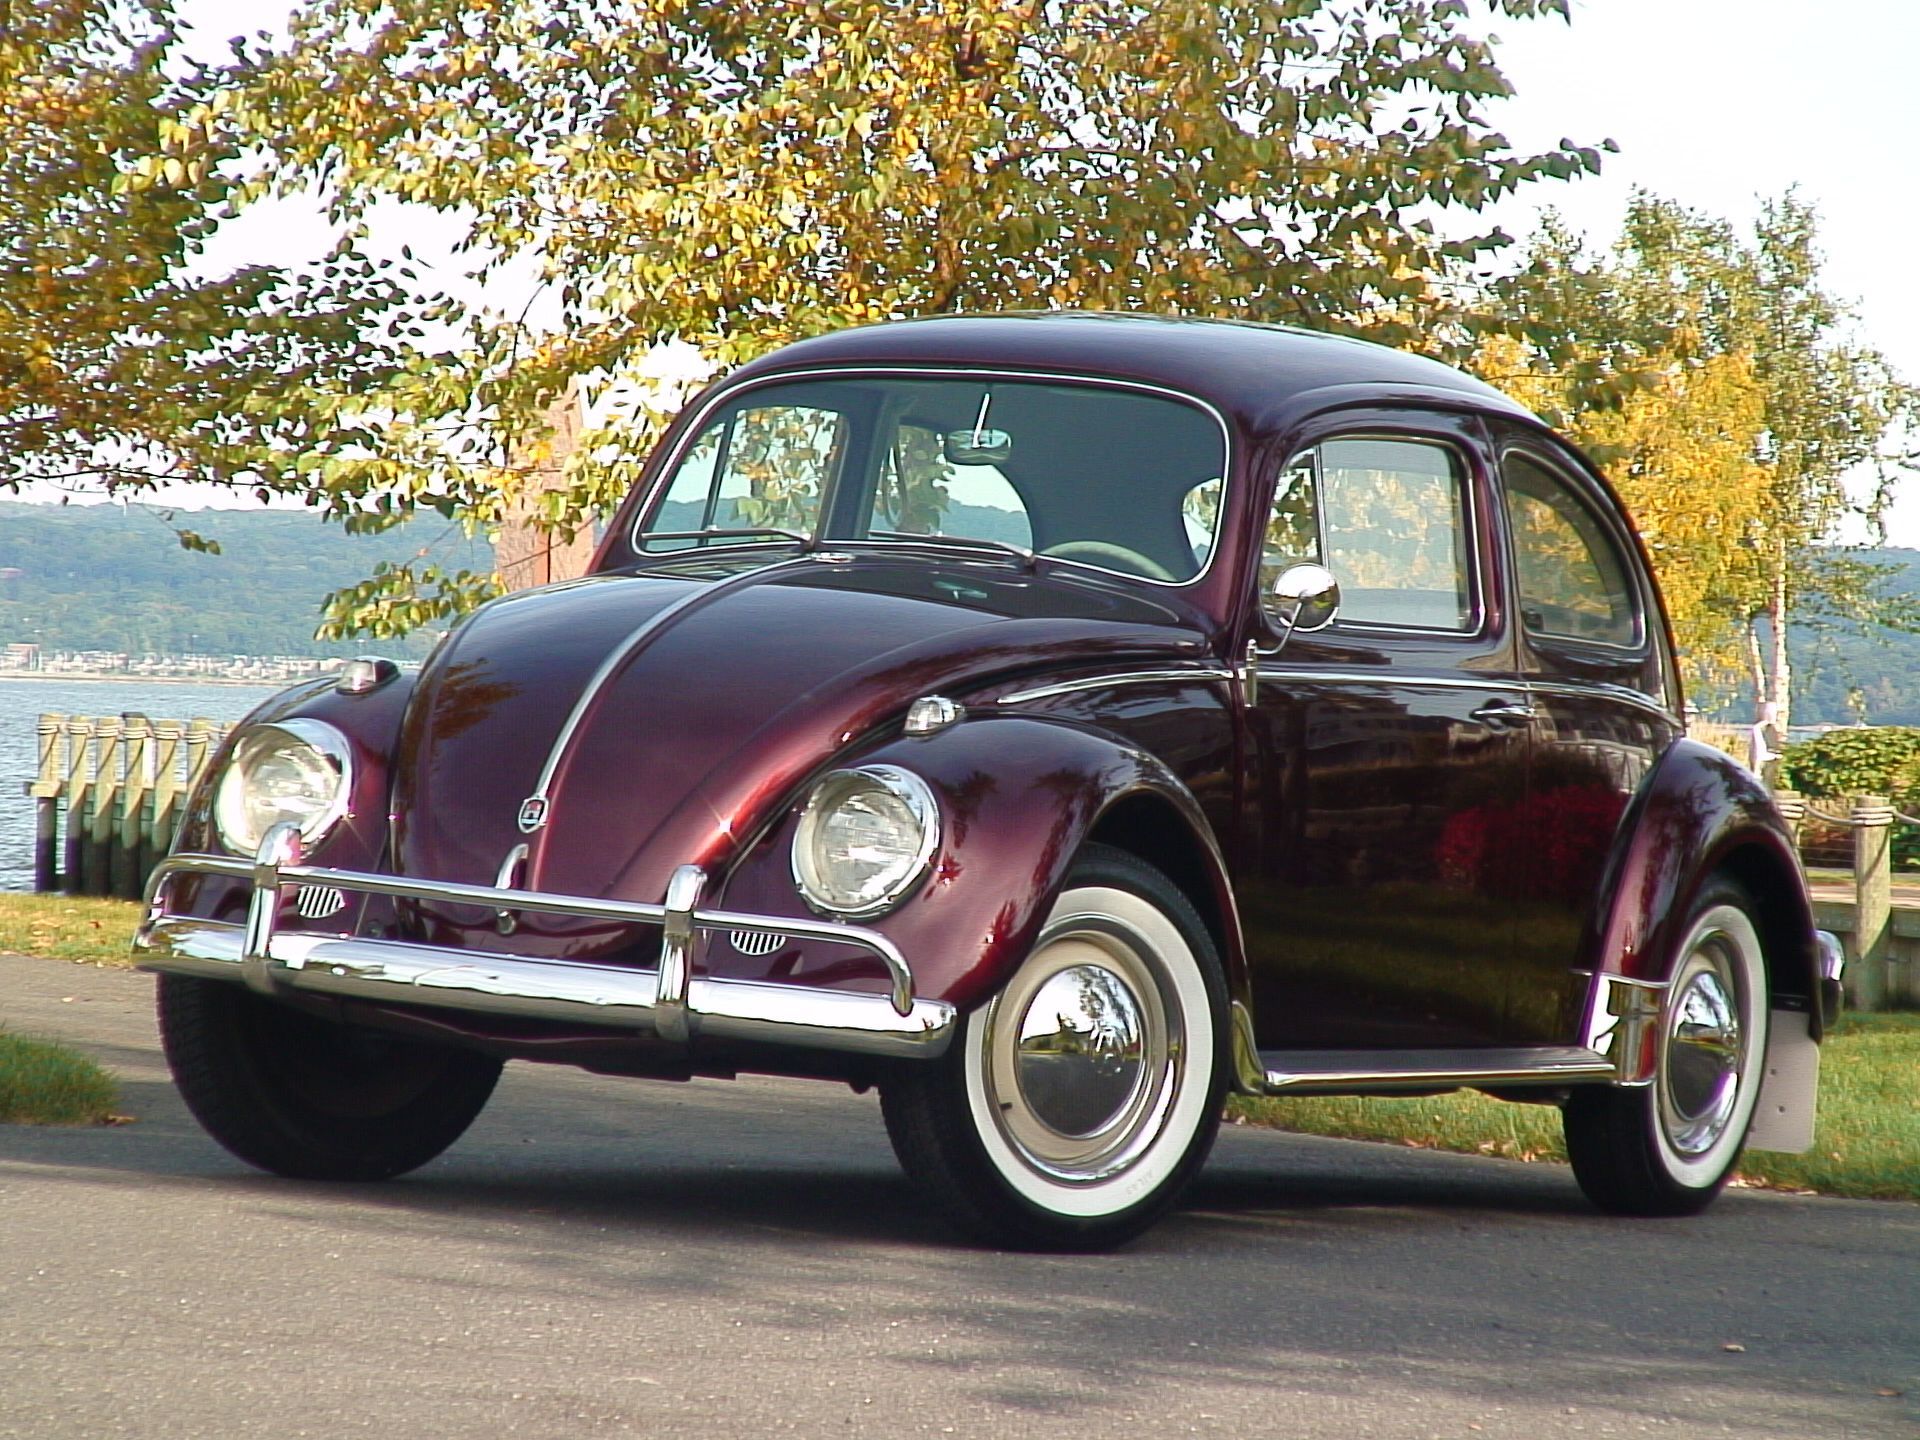 Dark Garnet red 1960 Volkswagen Beetle parked next to a coastal park